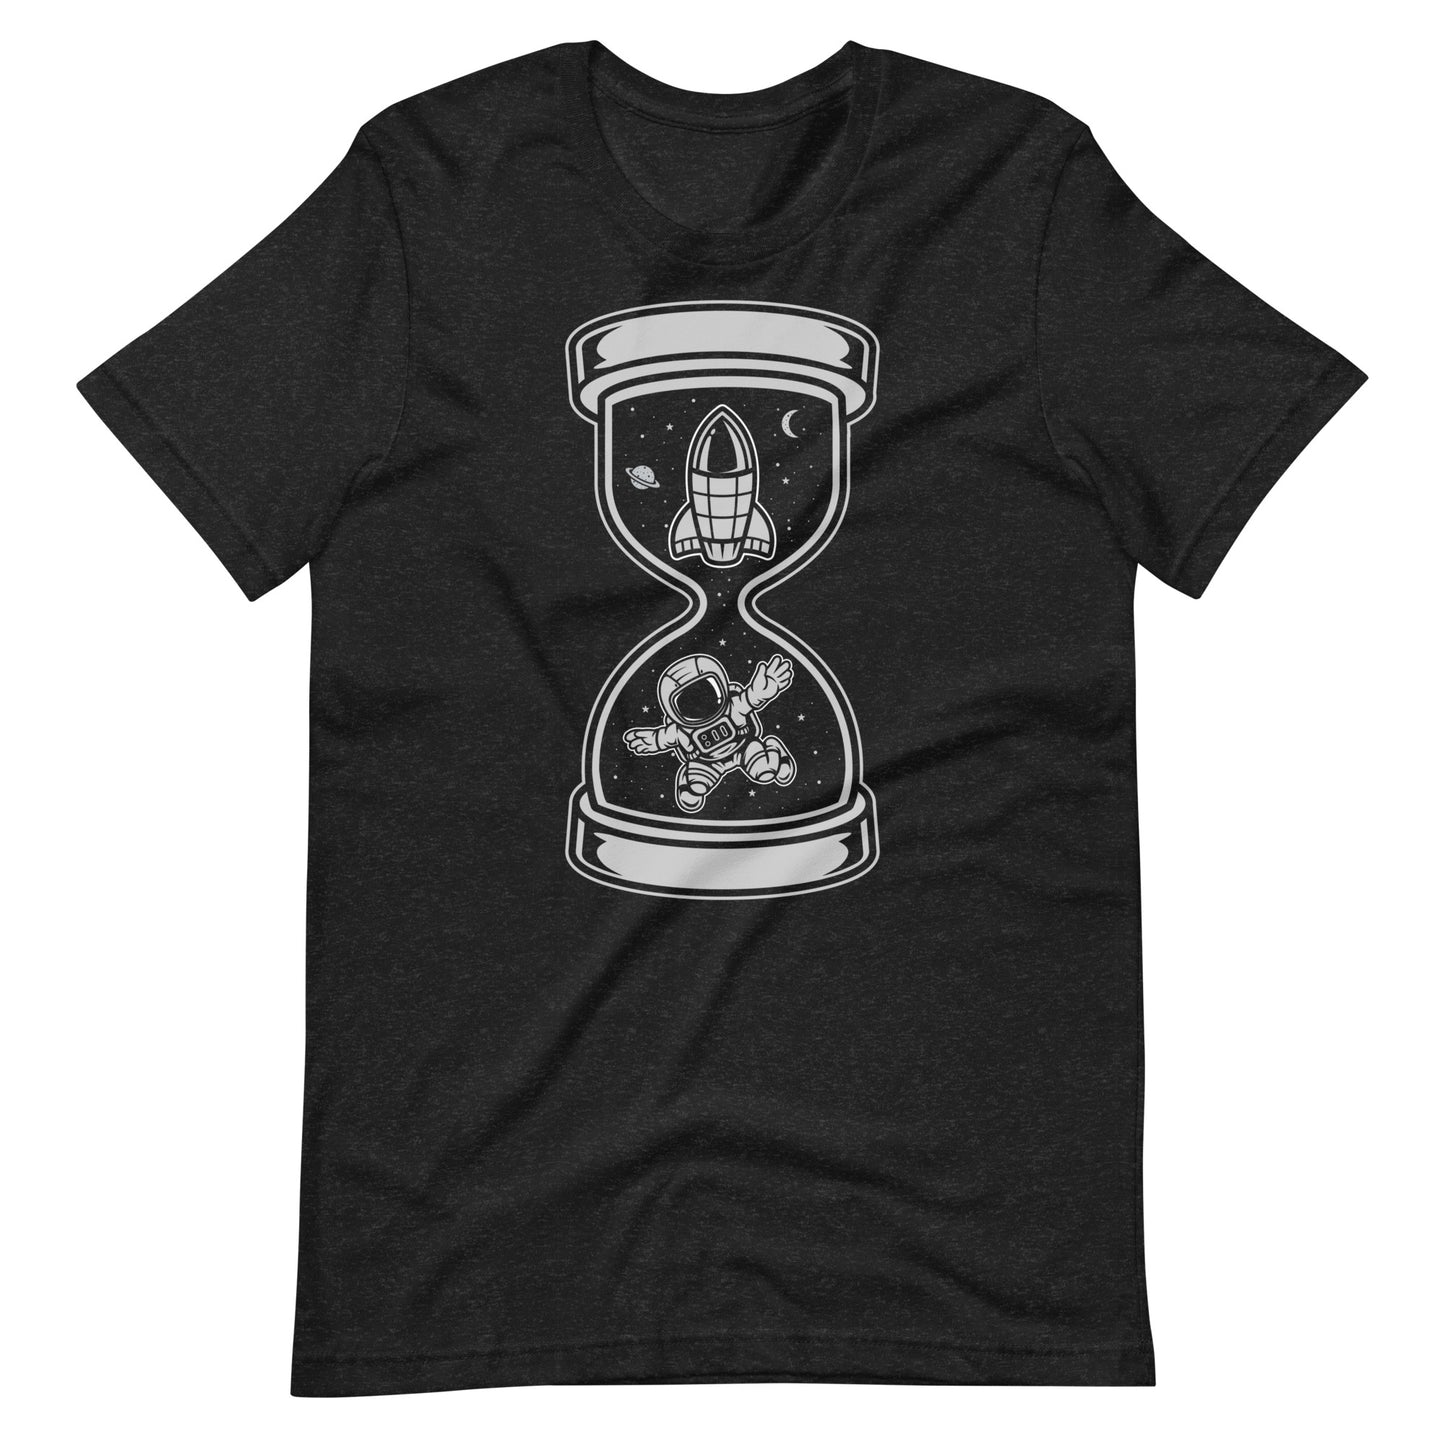 Astronaut Time - Men's t-shirt - Black Heather Front